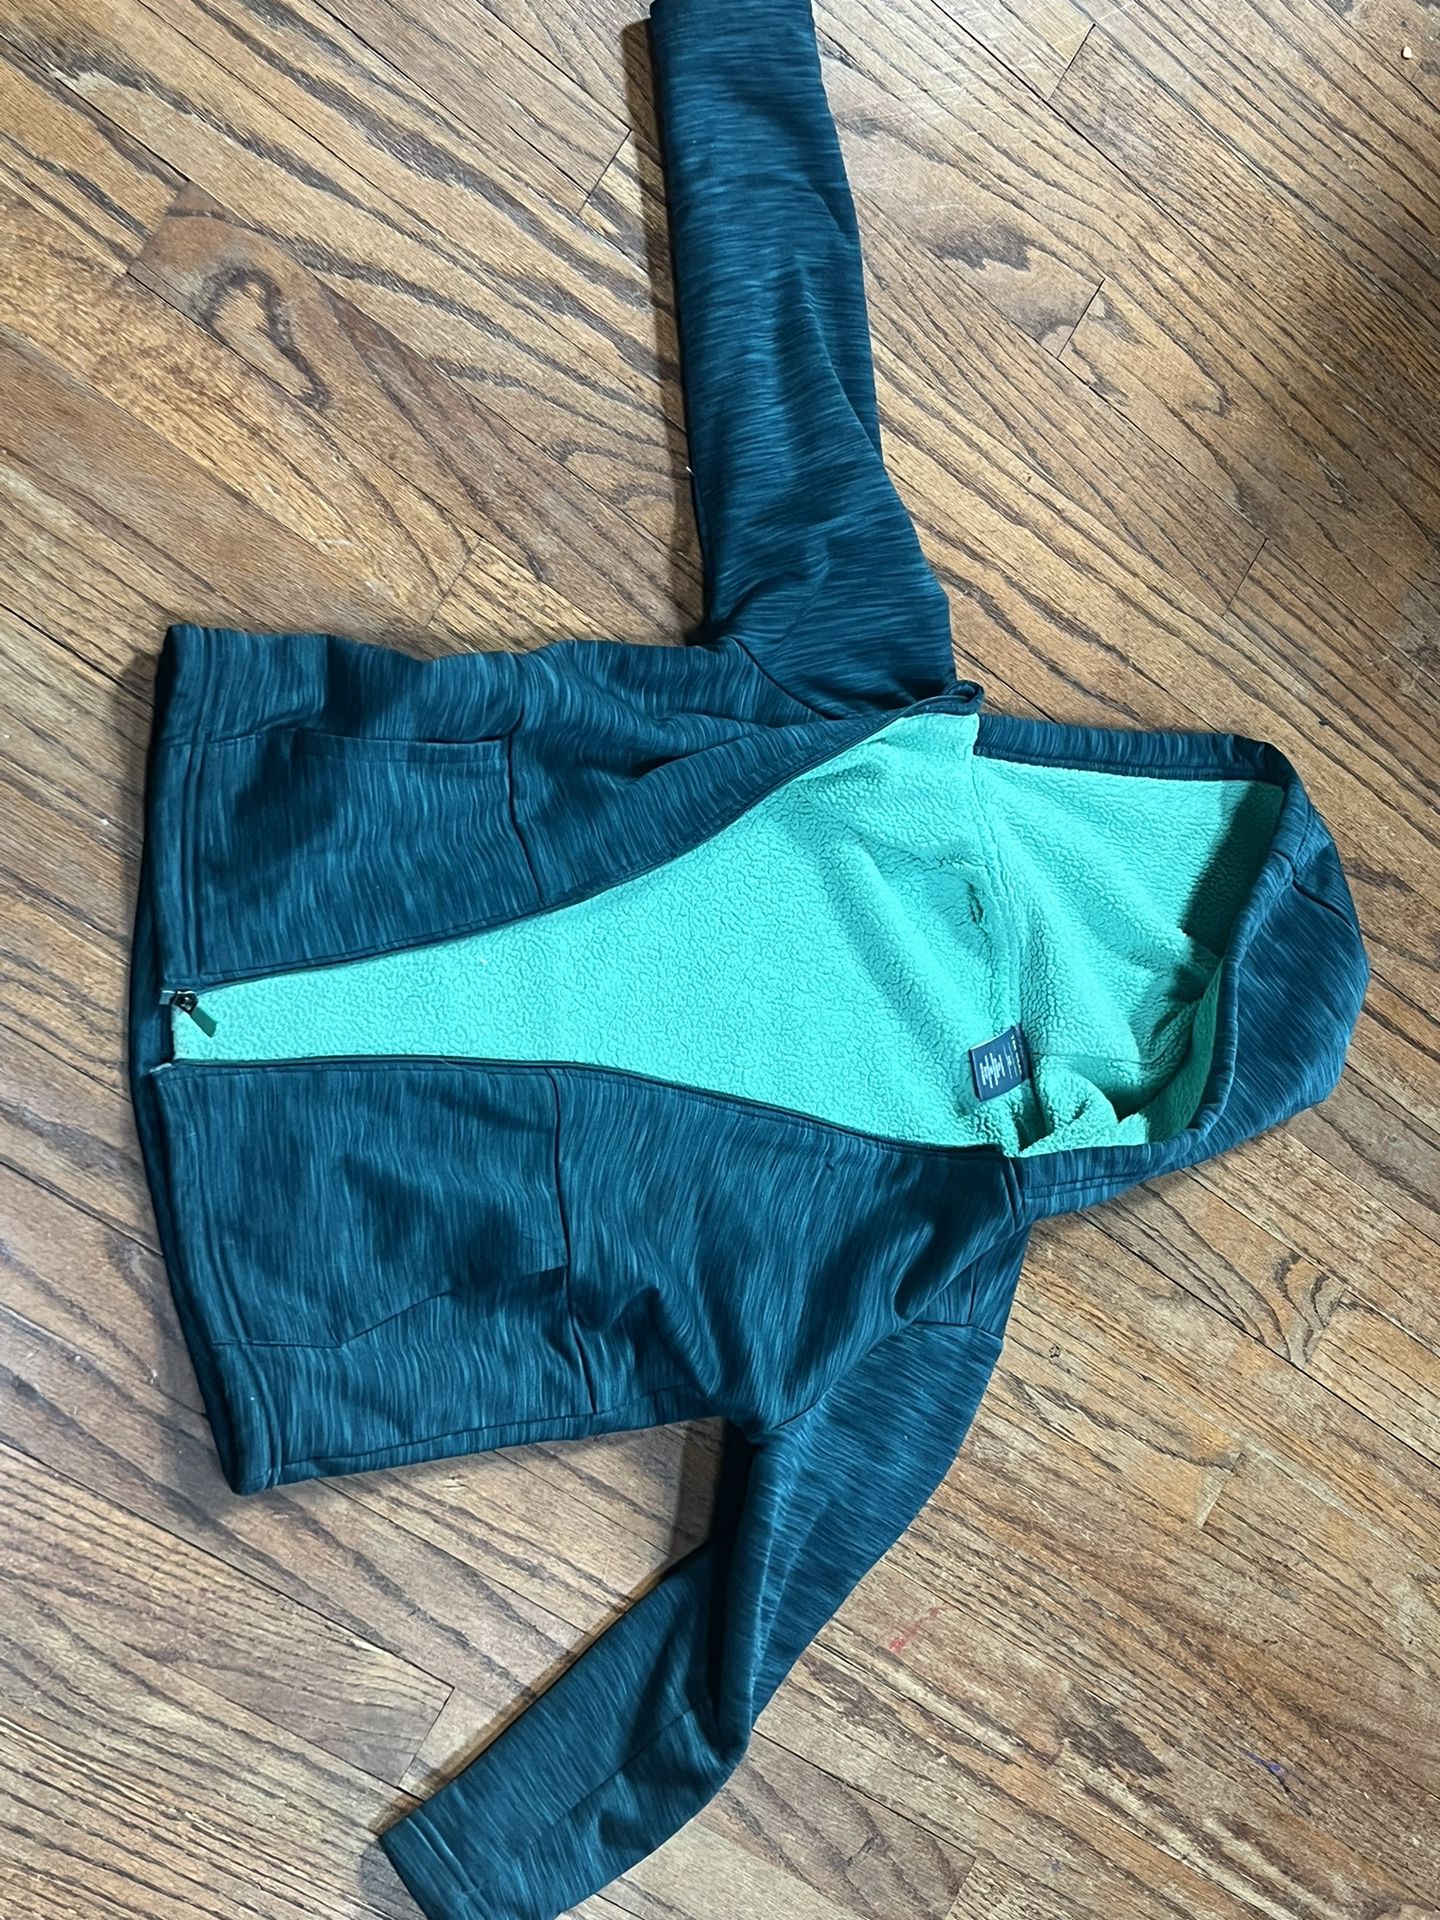 Children’s Tek-Gear Wool lined Jacket